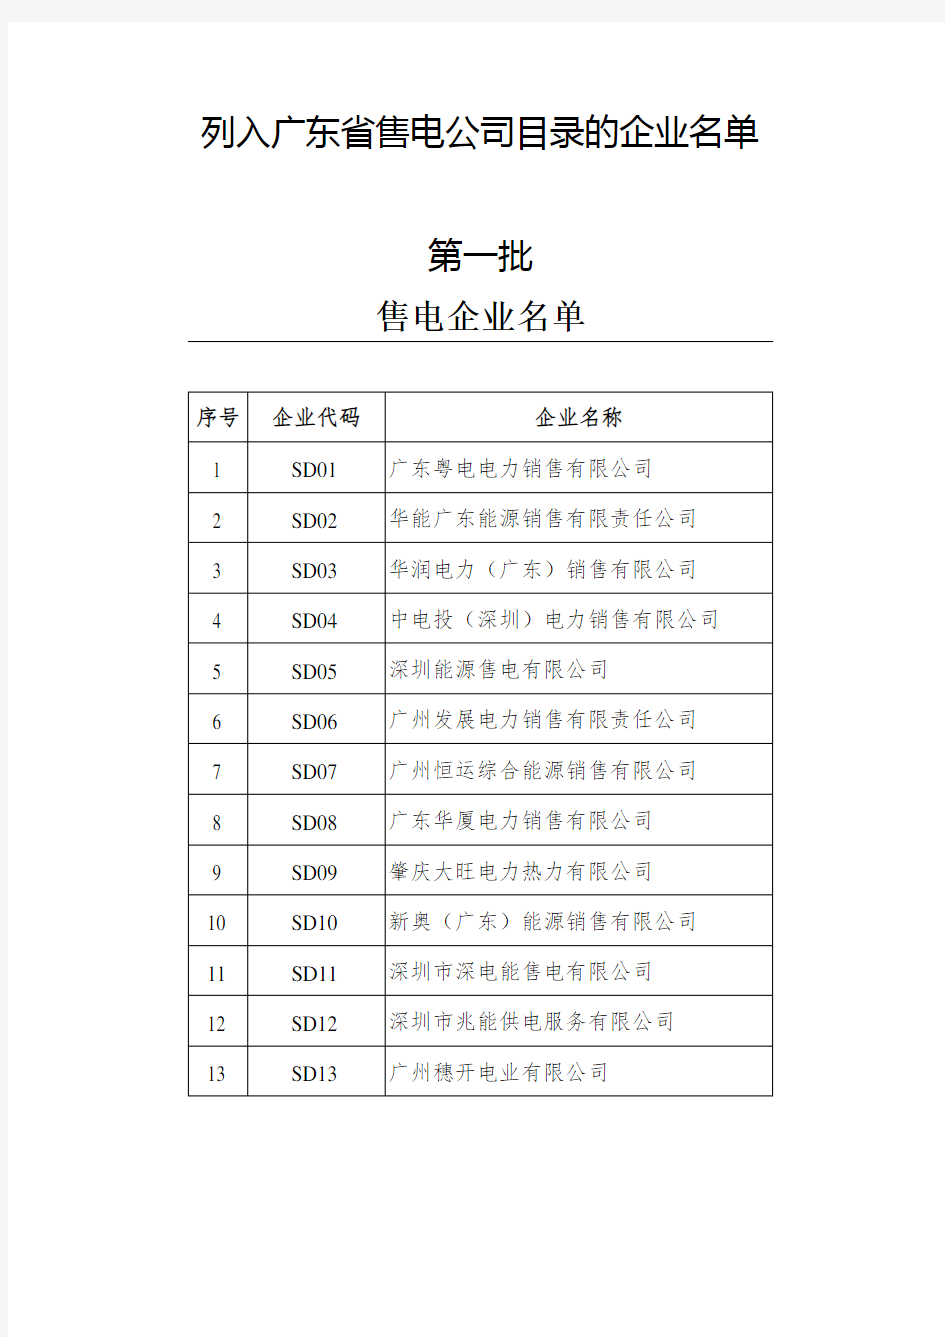 列入广东省售电公司目录的企业名单(1-6批)